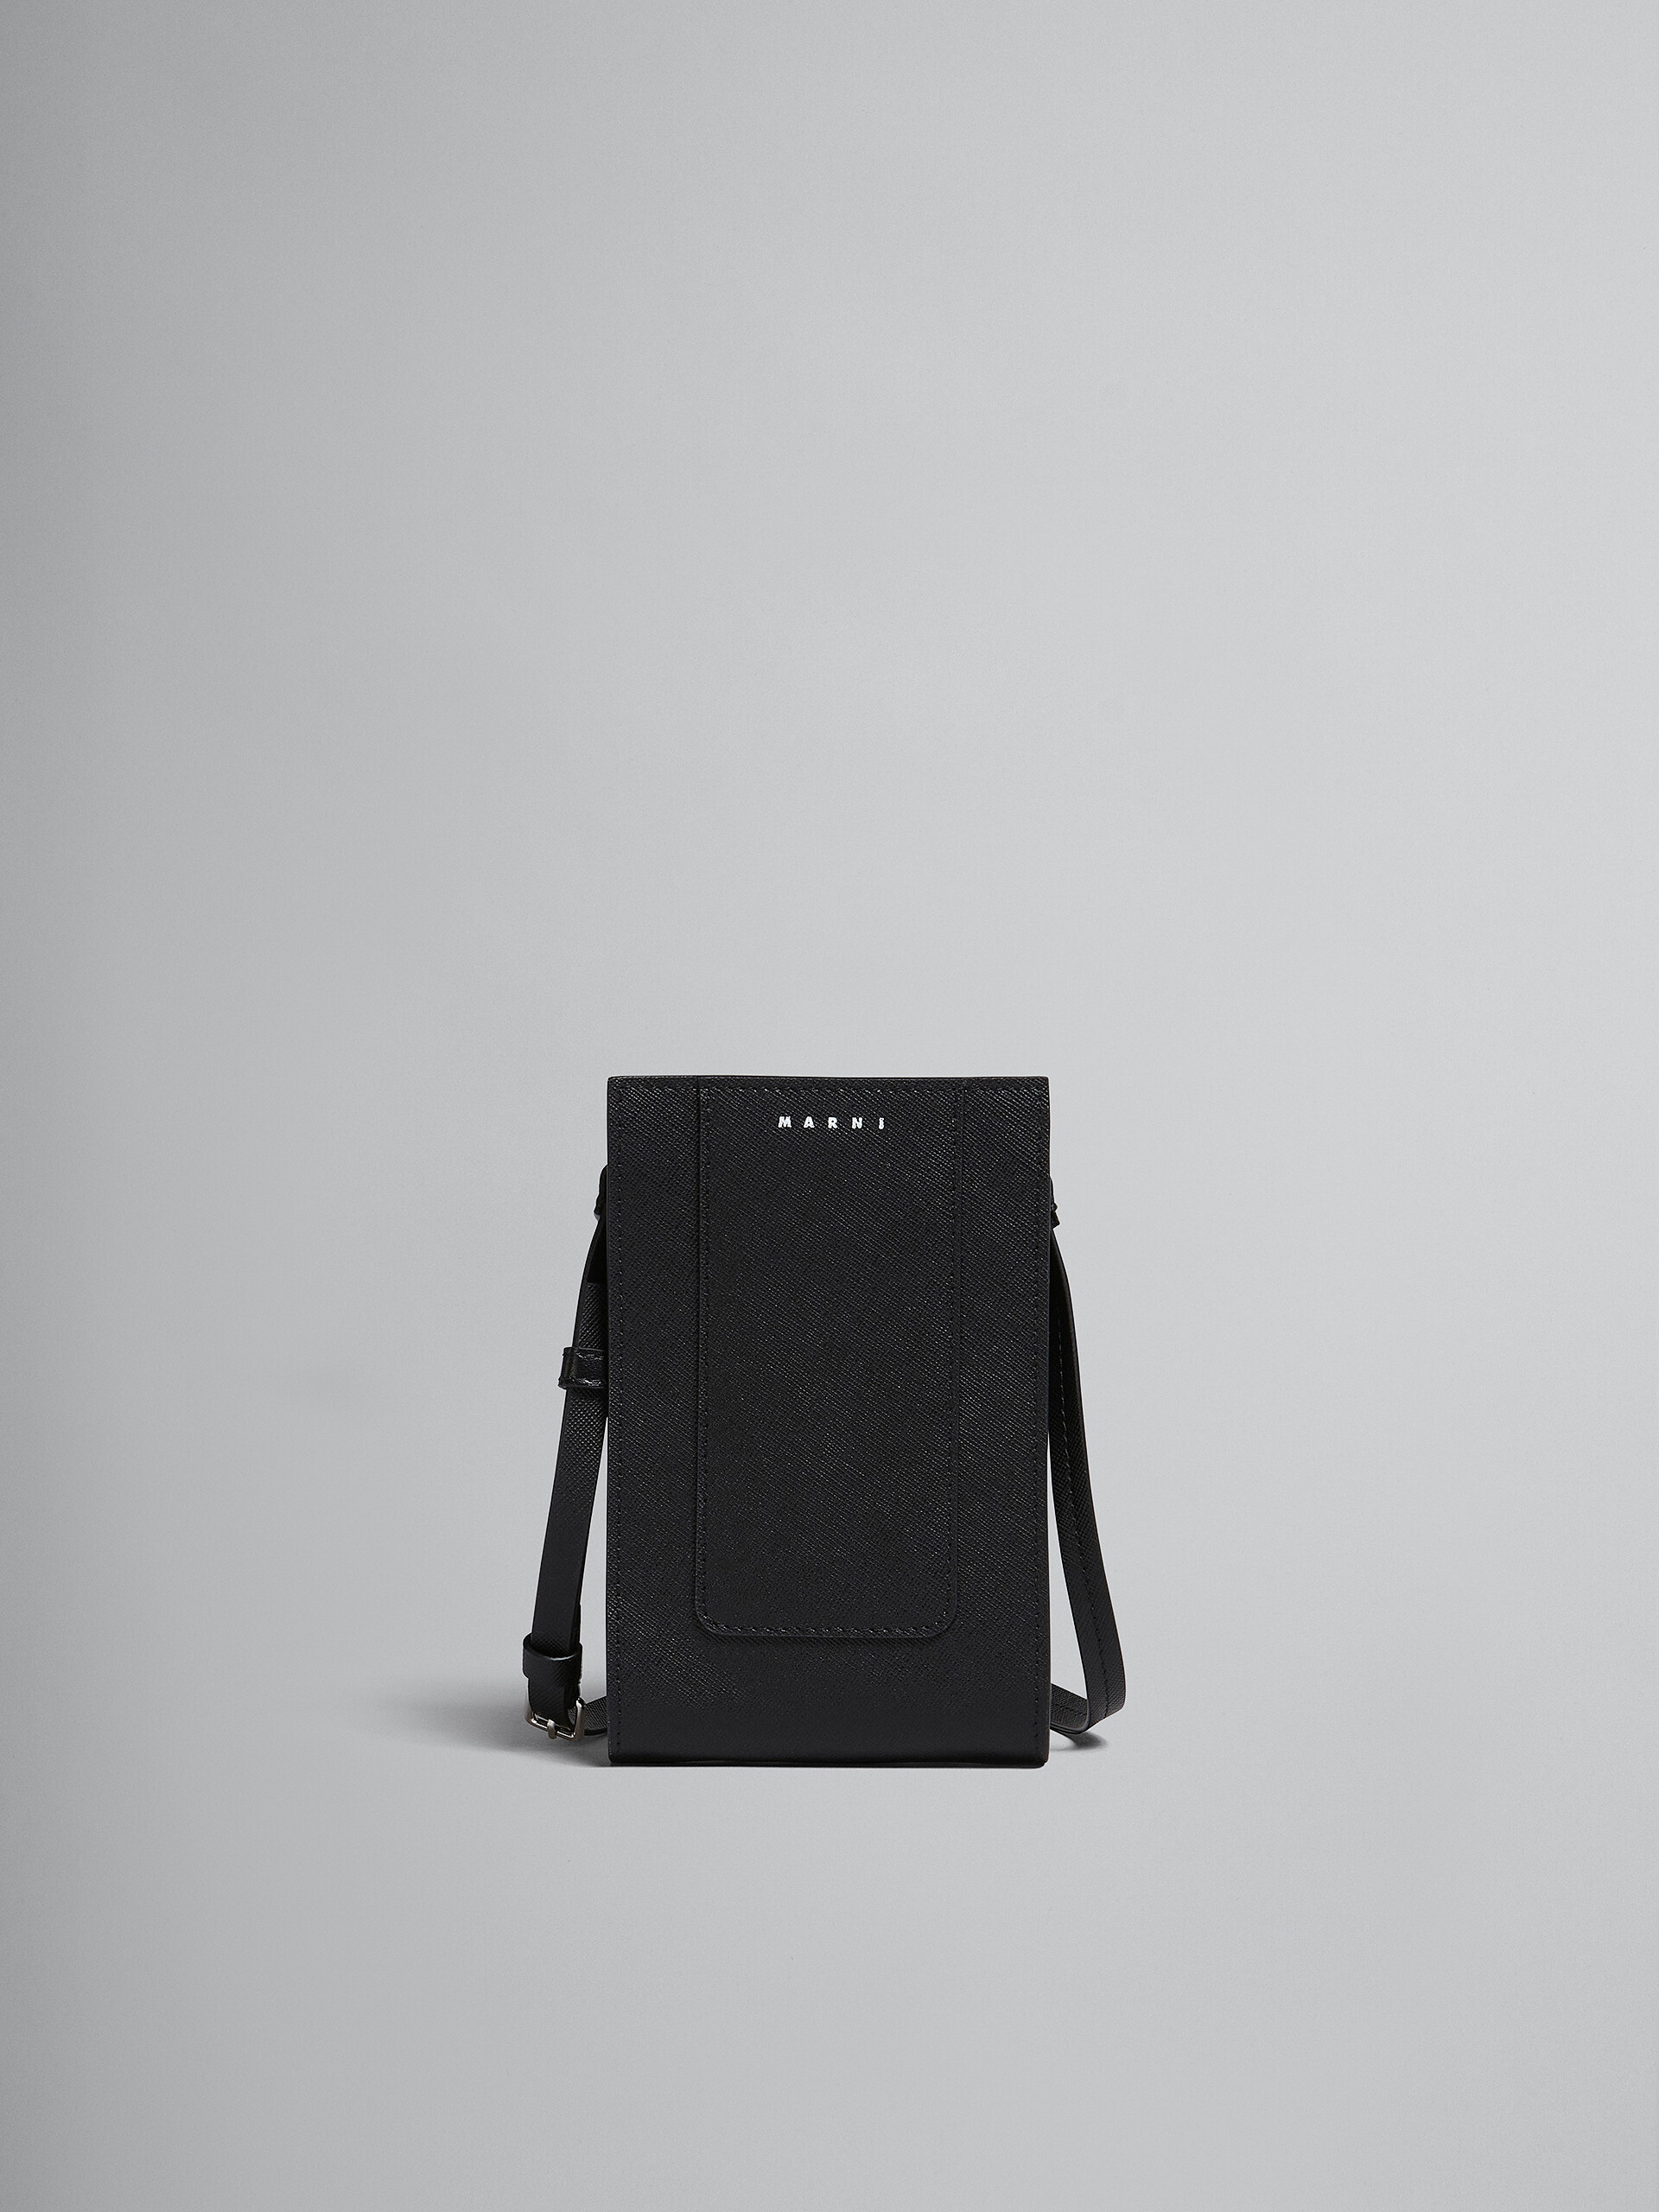 Smartphone-Hülle aus schwarzem Saffiano-Leder - Brieftaschen & Kleinlederwaren - Image 1